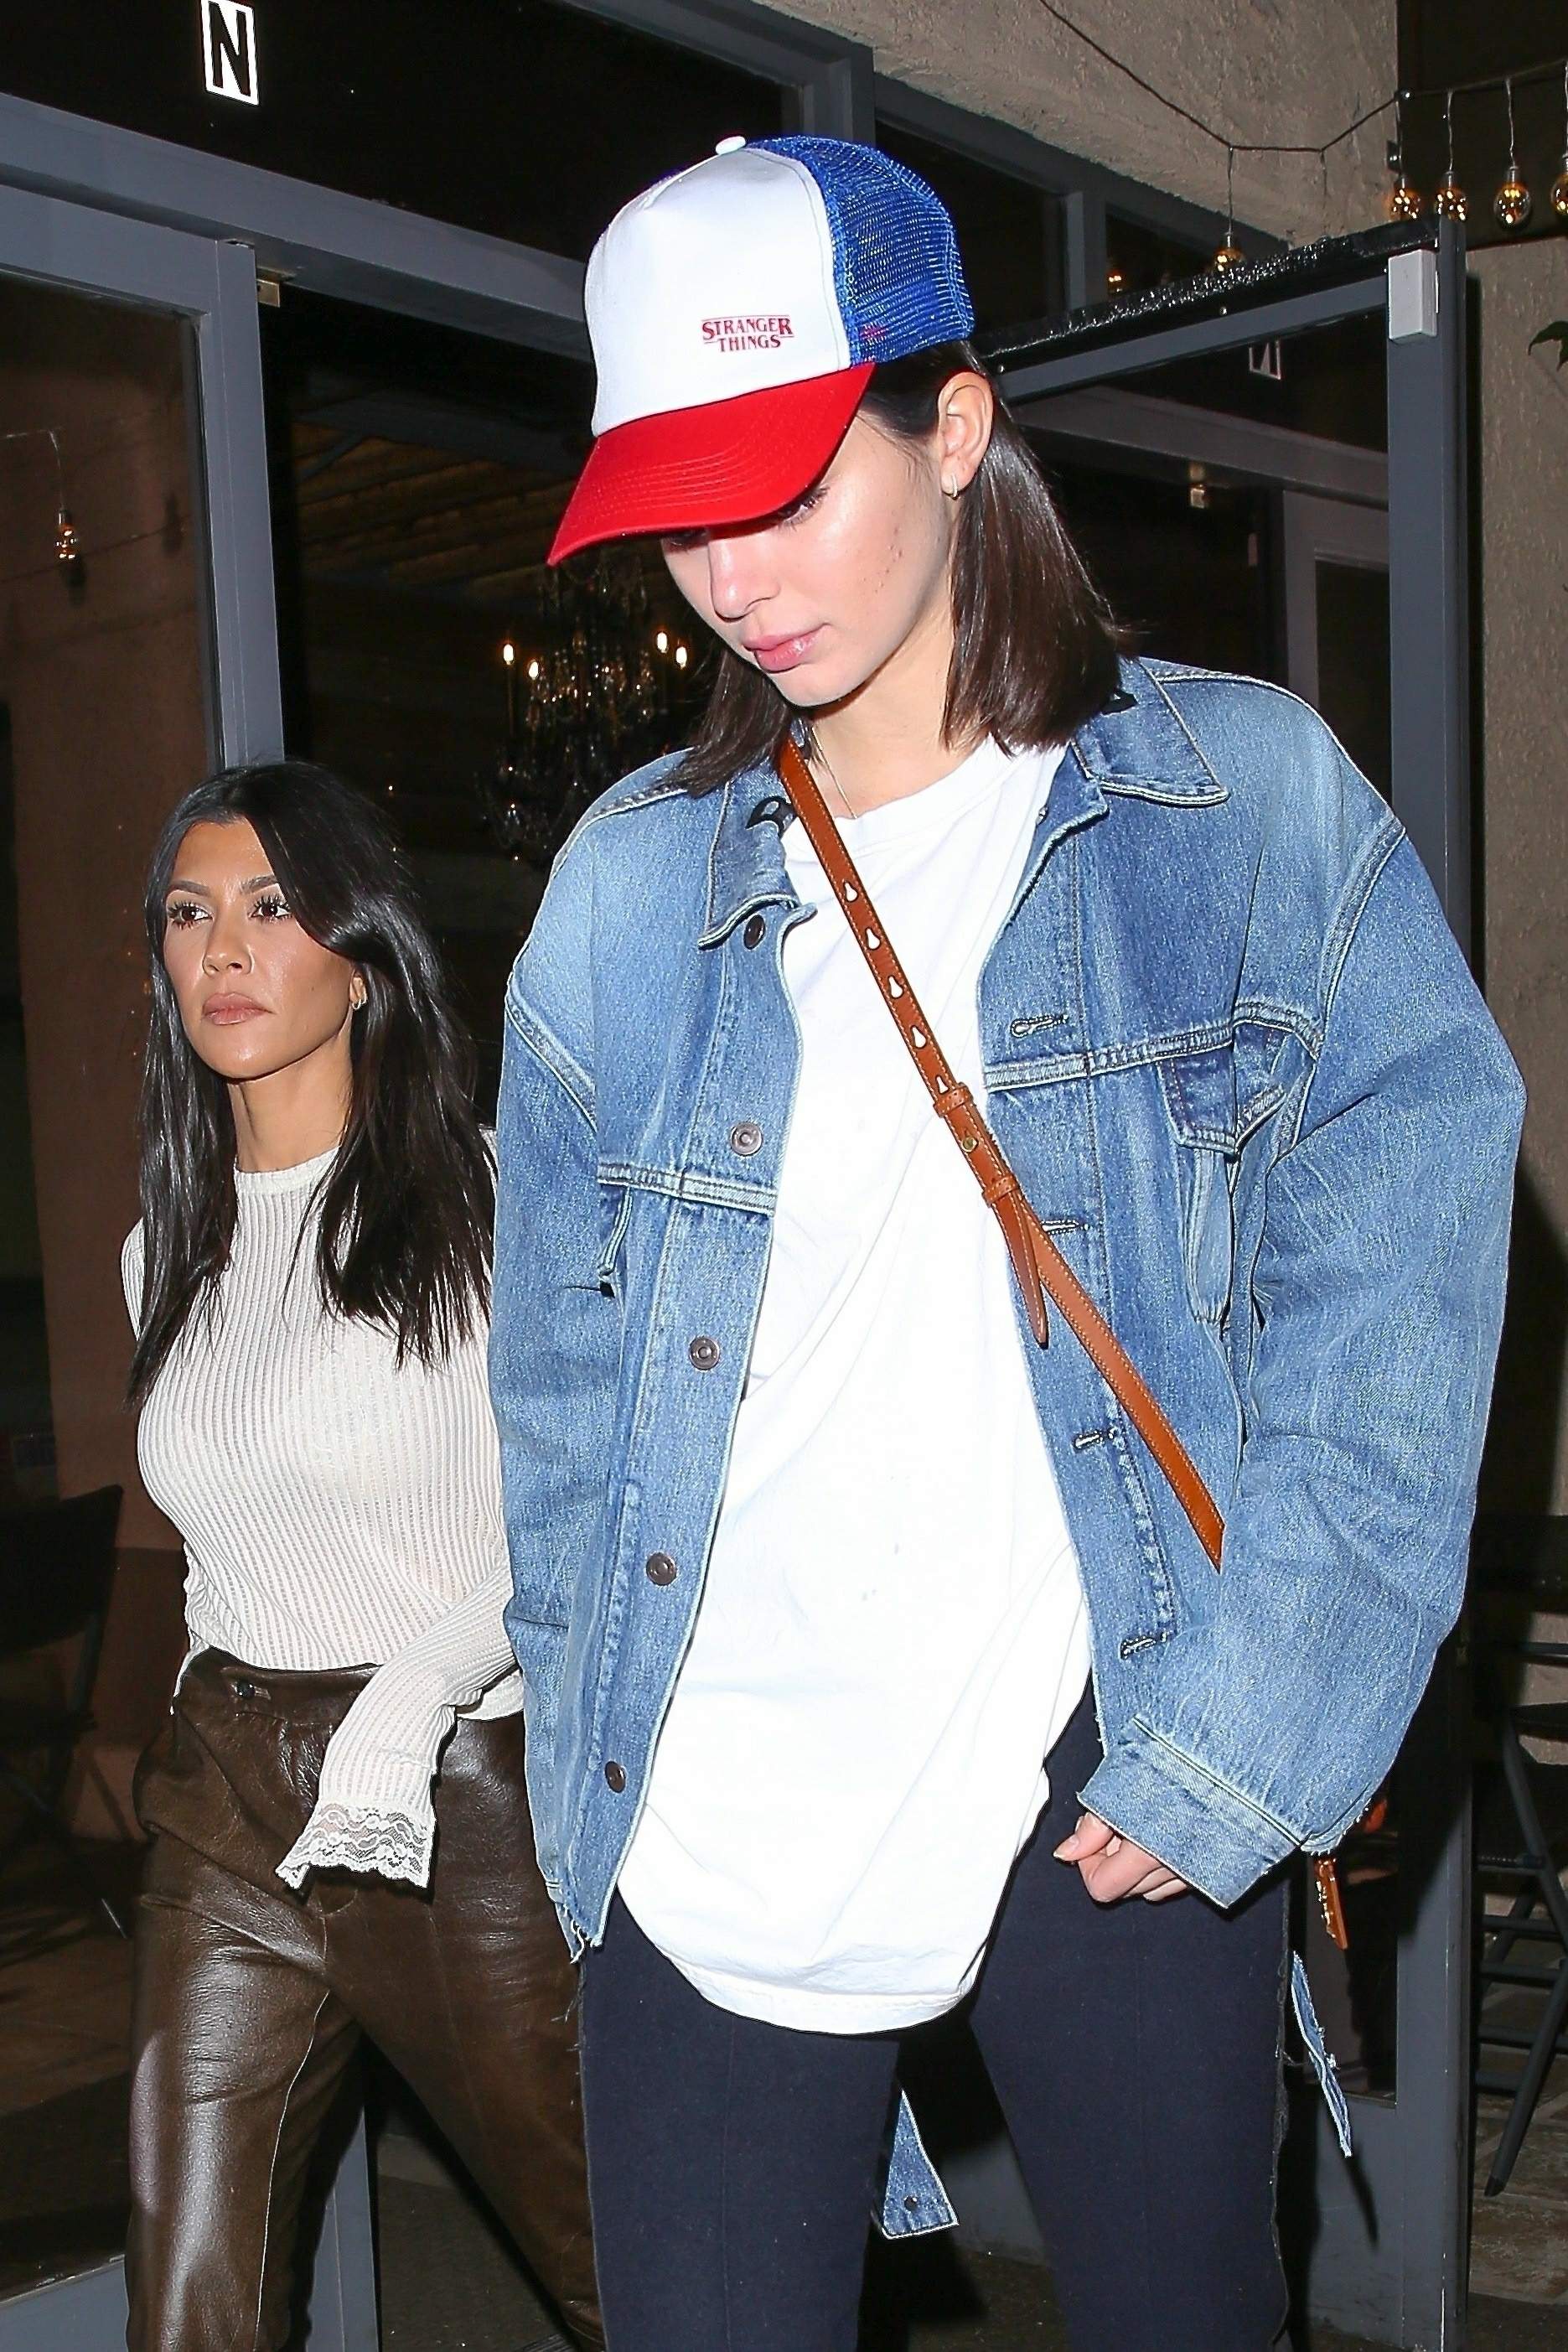 Kourtney Kardashian & Kendall Jenner out together for dinner